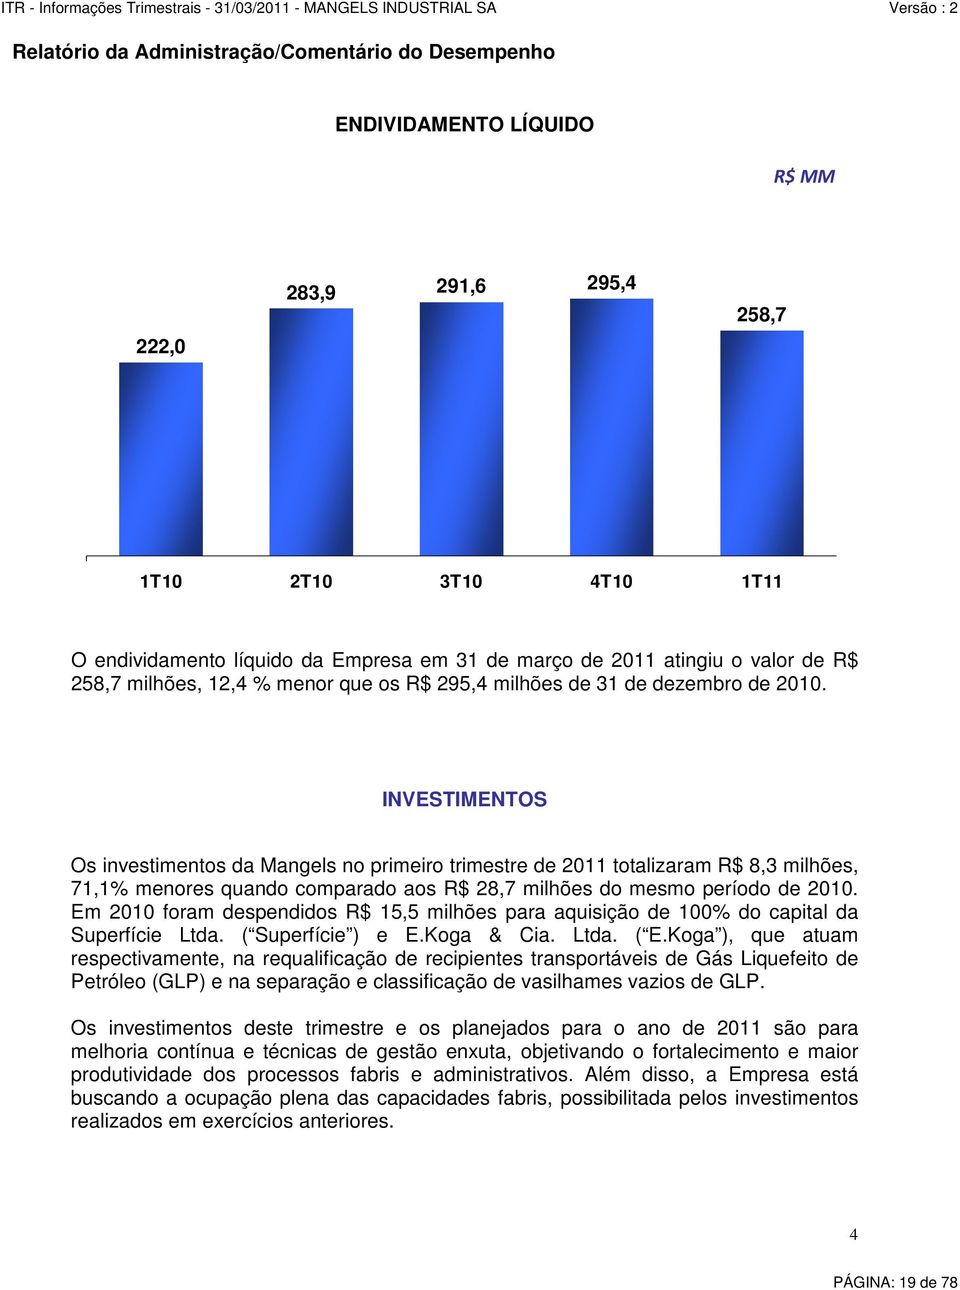 INVESTIMENTOS Os investimentos da Mangels no primeiro trimestre de 2011 totalizaram R$ 8,3 milhões, 71,1% menores quando comparado aos R$ 28,7 milhões do mesmo período de 2010.